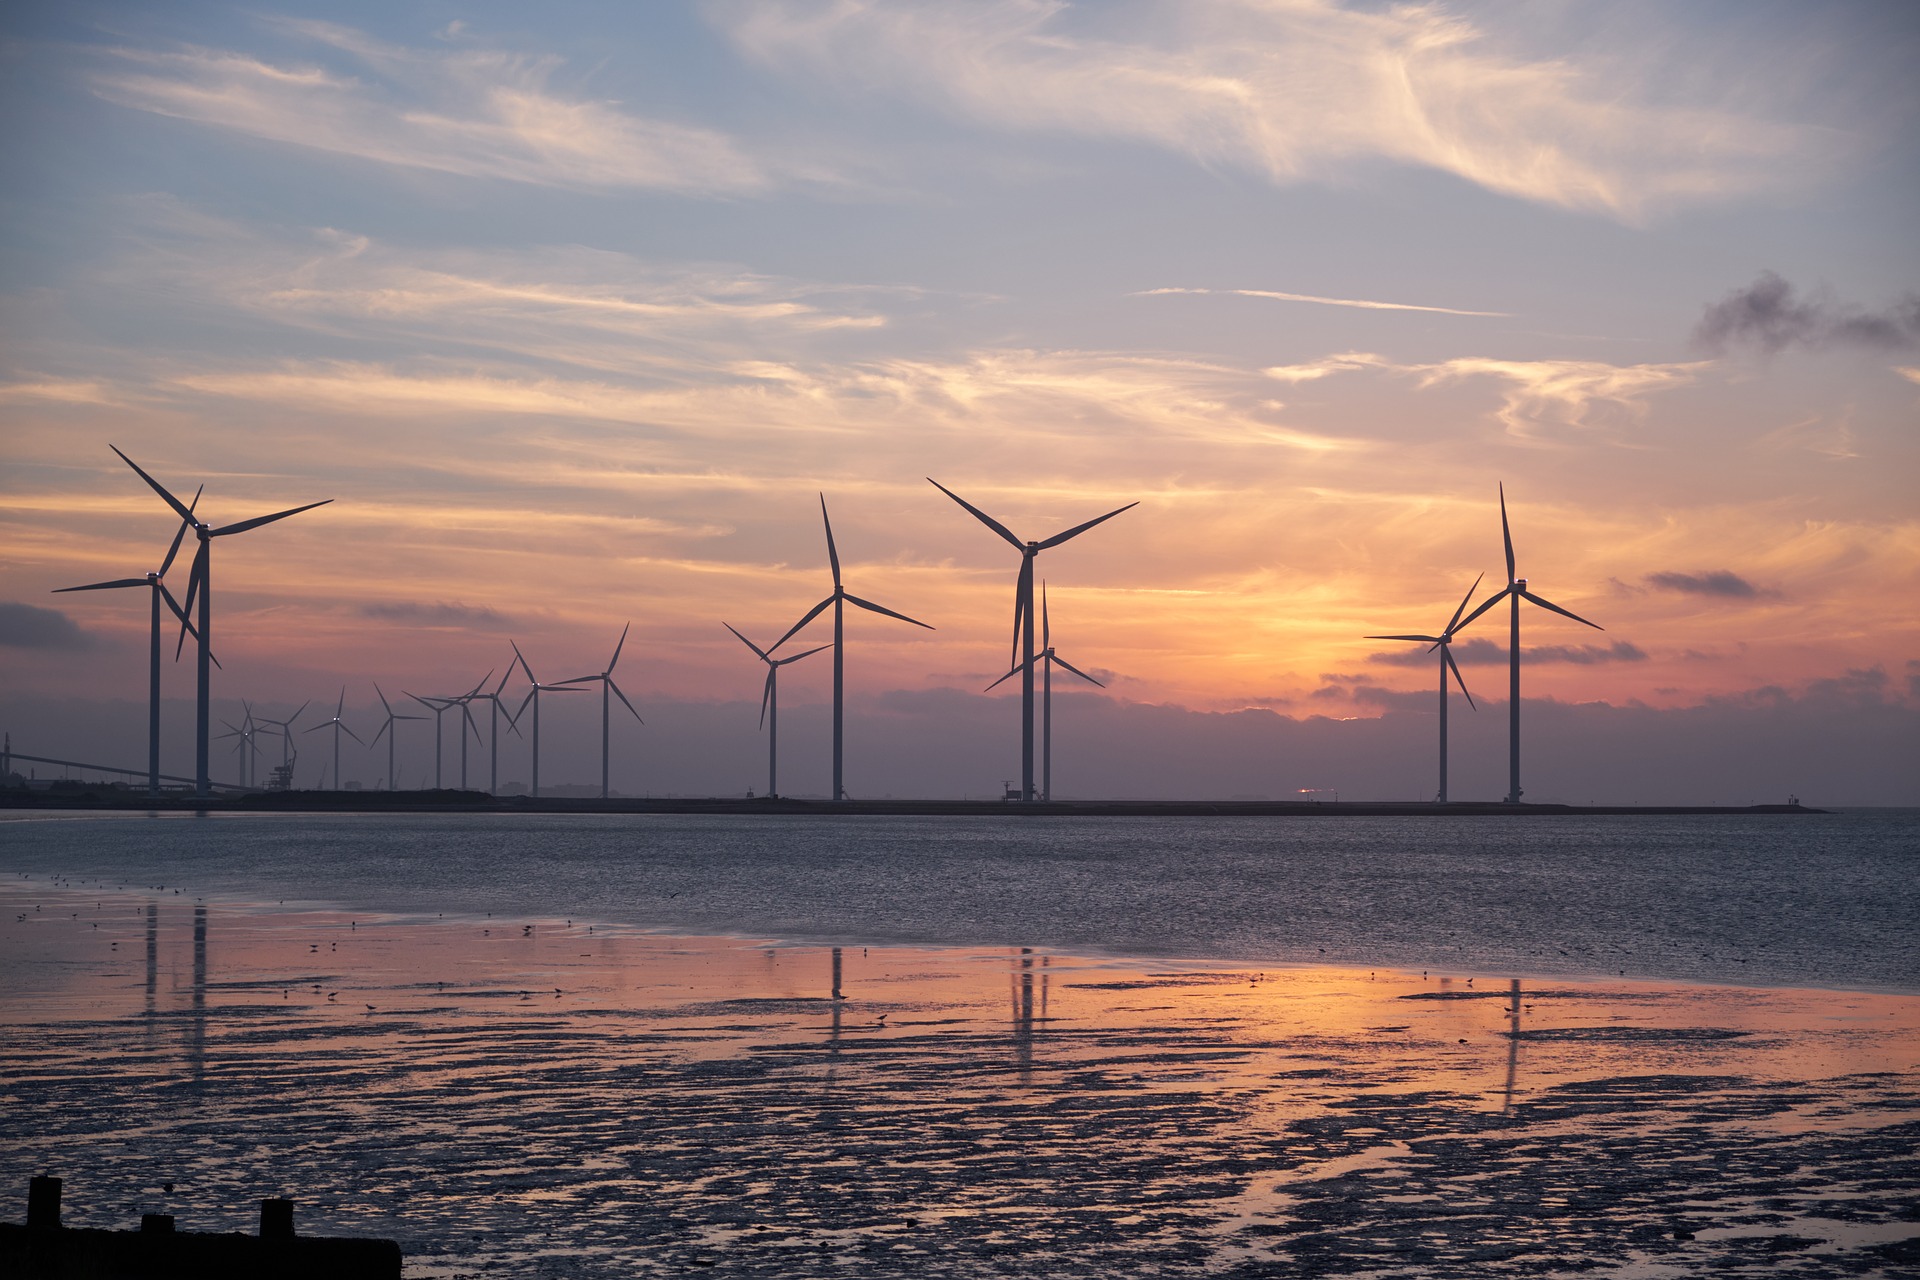 Éoliennes en mer : à quand une stratégie nationale claire ? | France Nature Environnement